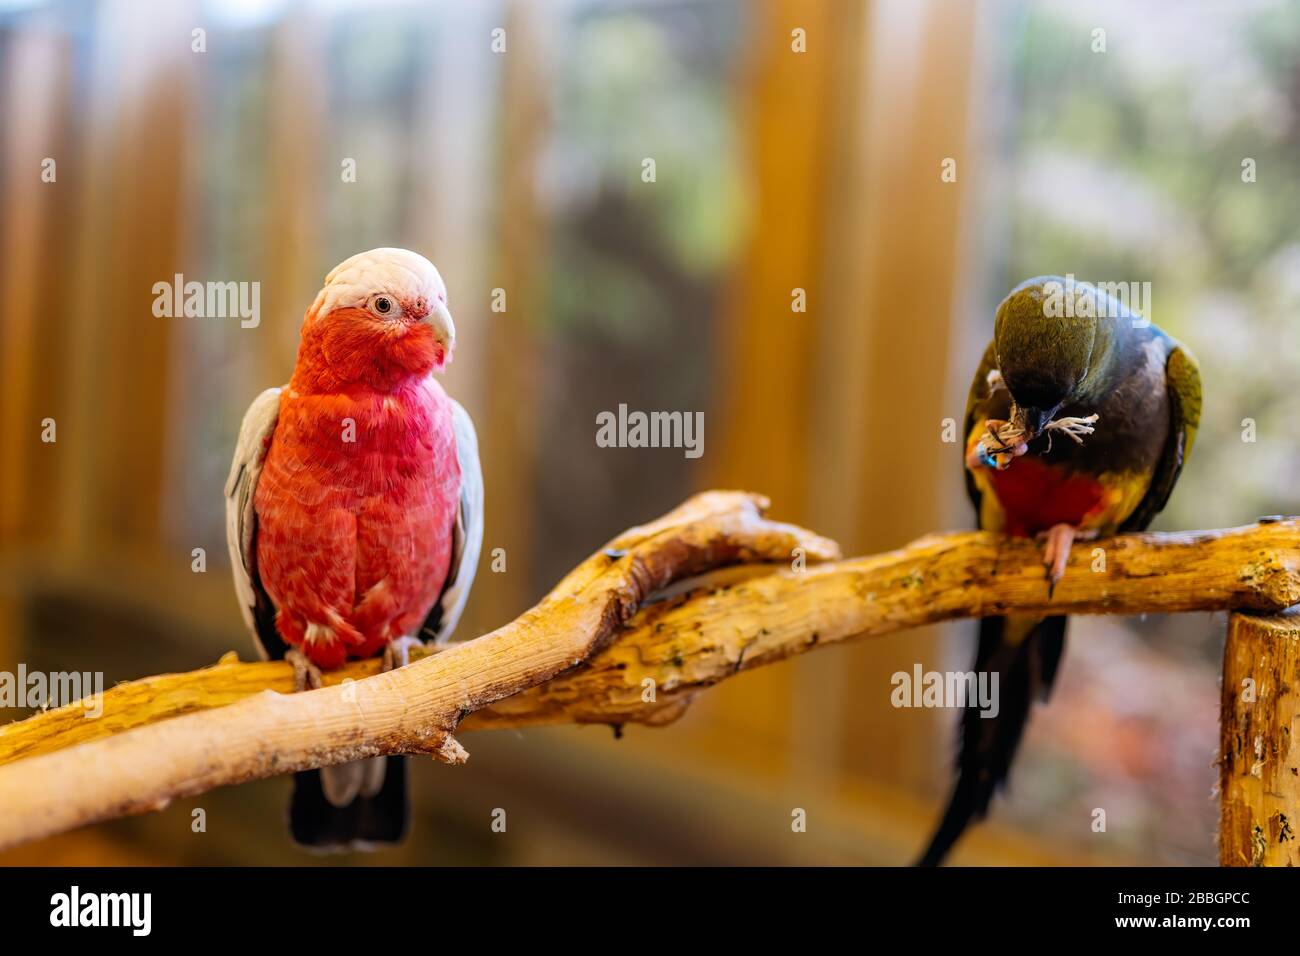 Cockatoo blanco y rojo de la familia de loros Cacatuidae, sentados sobre una perca en una gran jaula de aves. Enfoque selectivo en el pájaro con fondo borroso Foto de stock